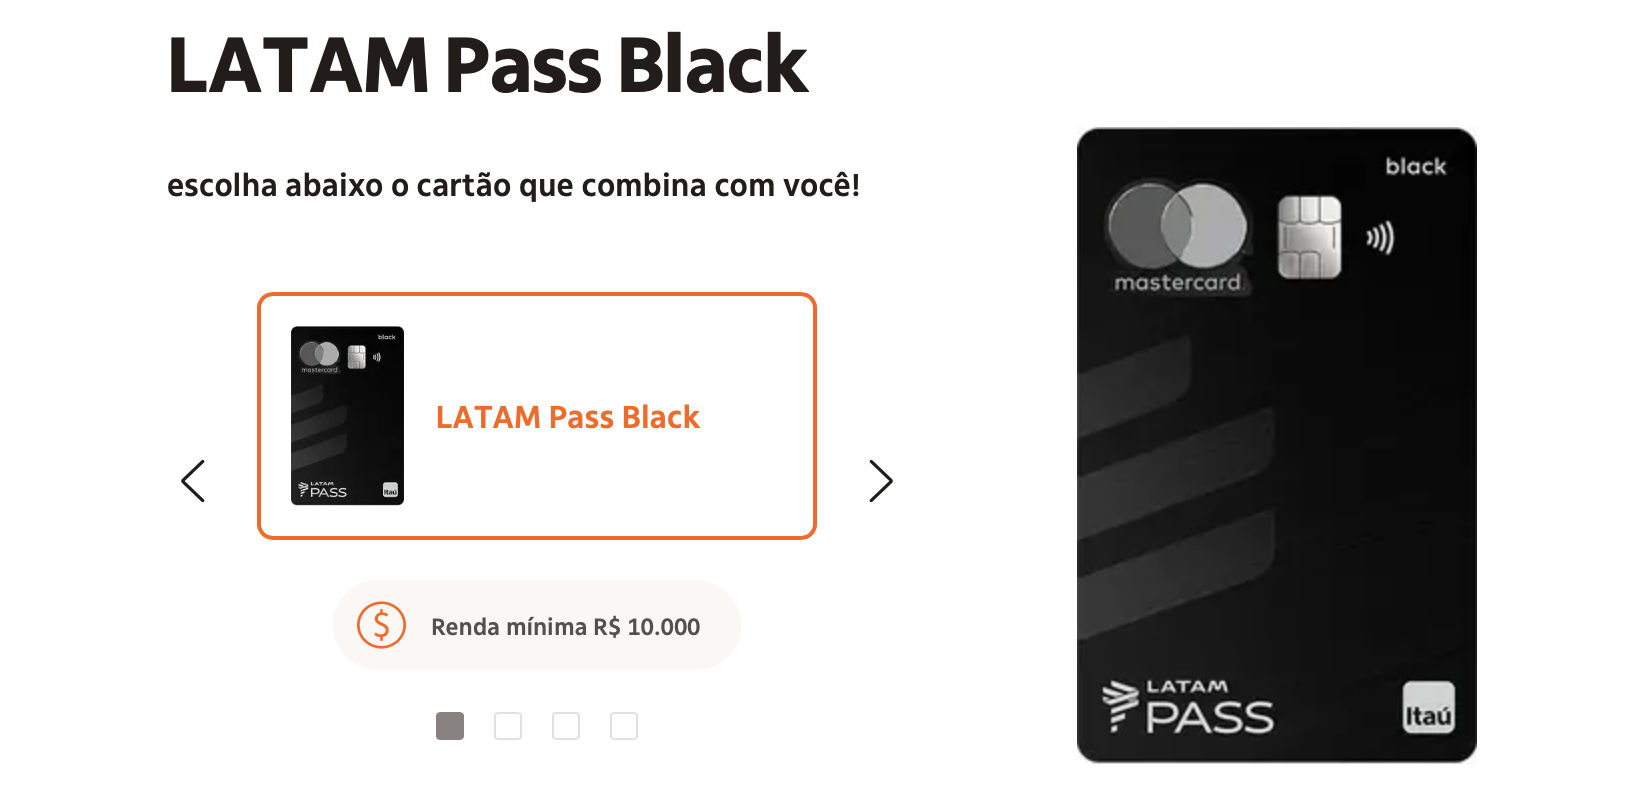 Qual a renda mínima para ter um cartão Latam Pass Black?